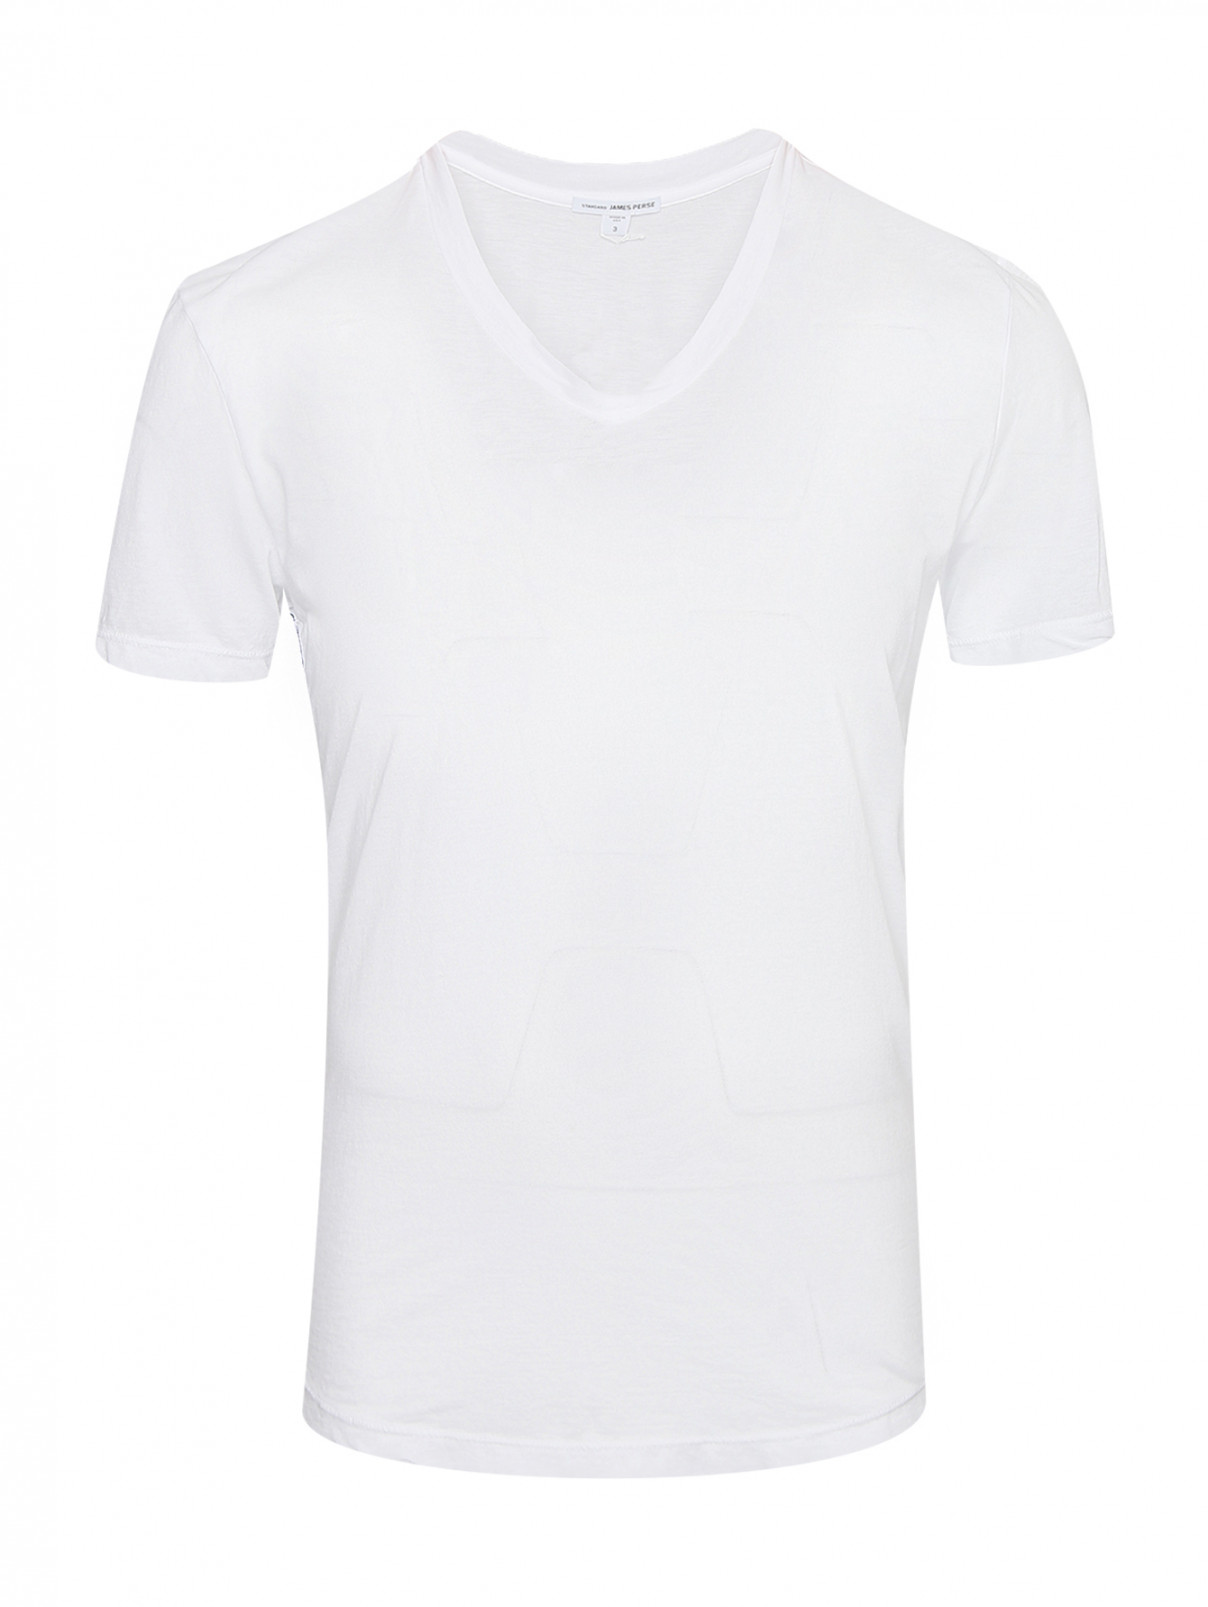 Базовая футболка из хлопка James Perse  –  Общий вид  – Цвет:  Белый